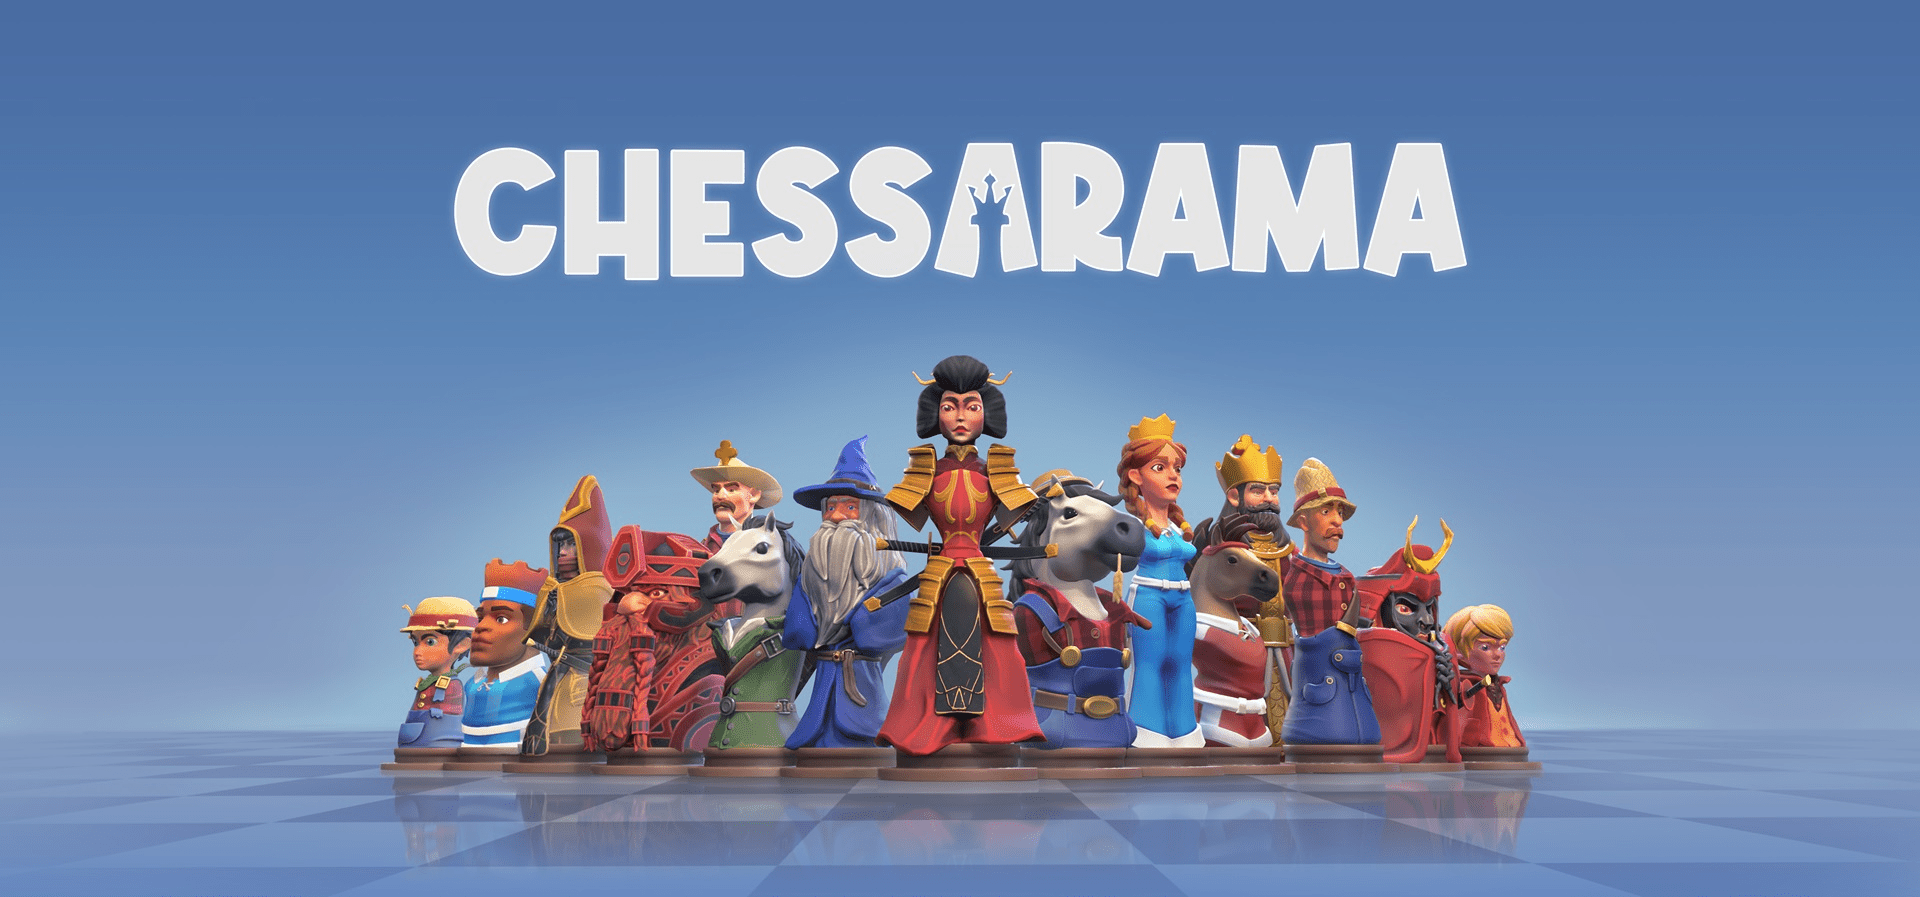 Chessarama: ganhe um tabuleiro assinado por lendas do xadrez - Adrenaline